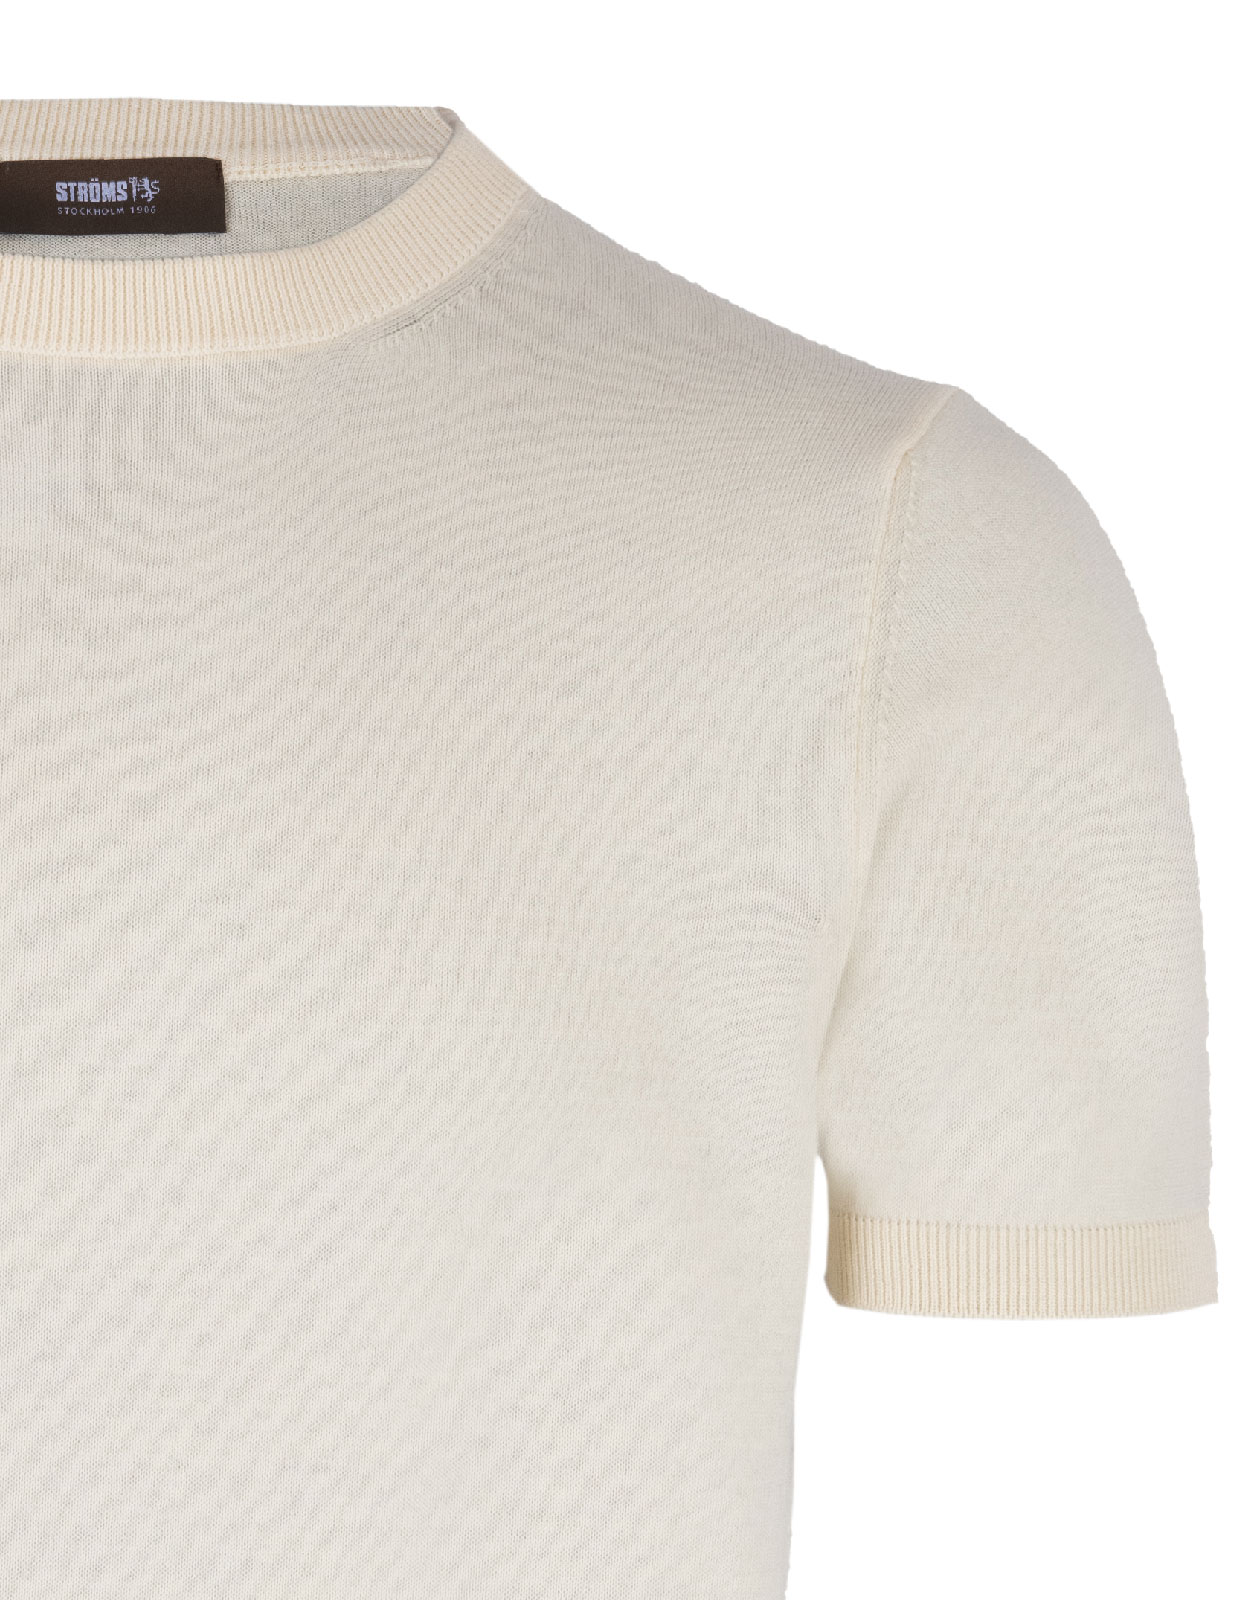 T-Shirt Knitted Cotton Panna Stl XL